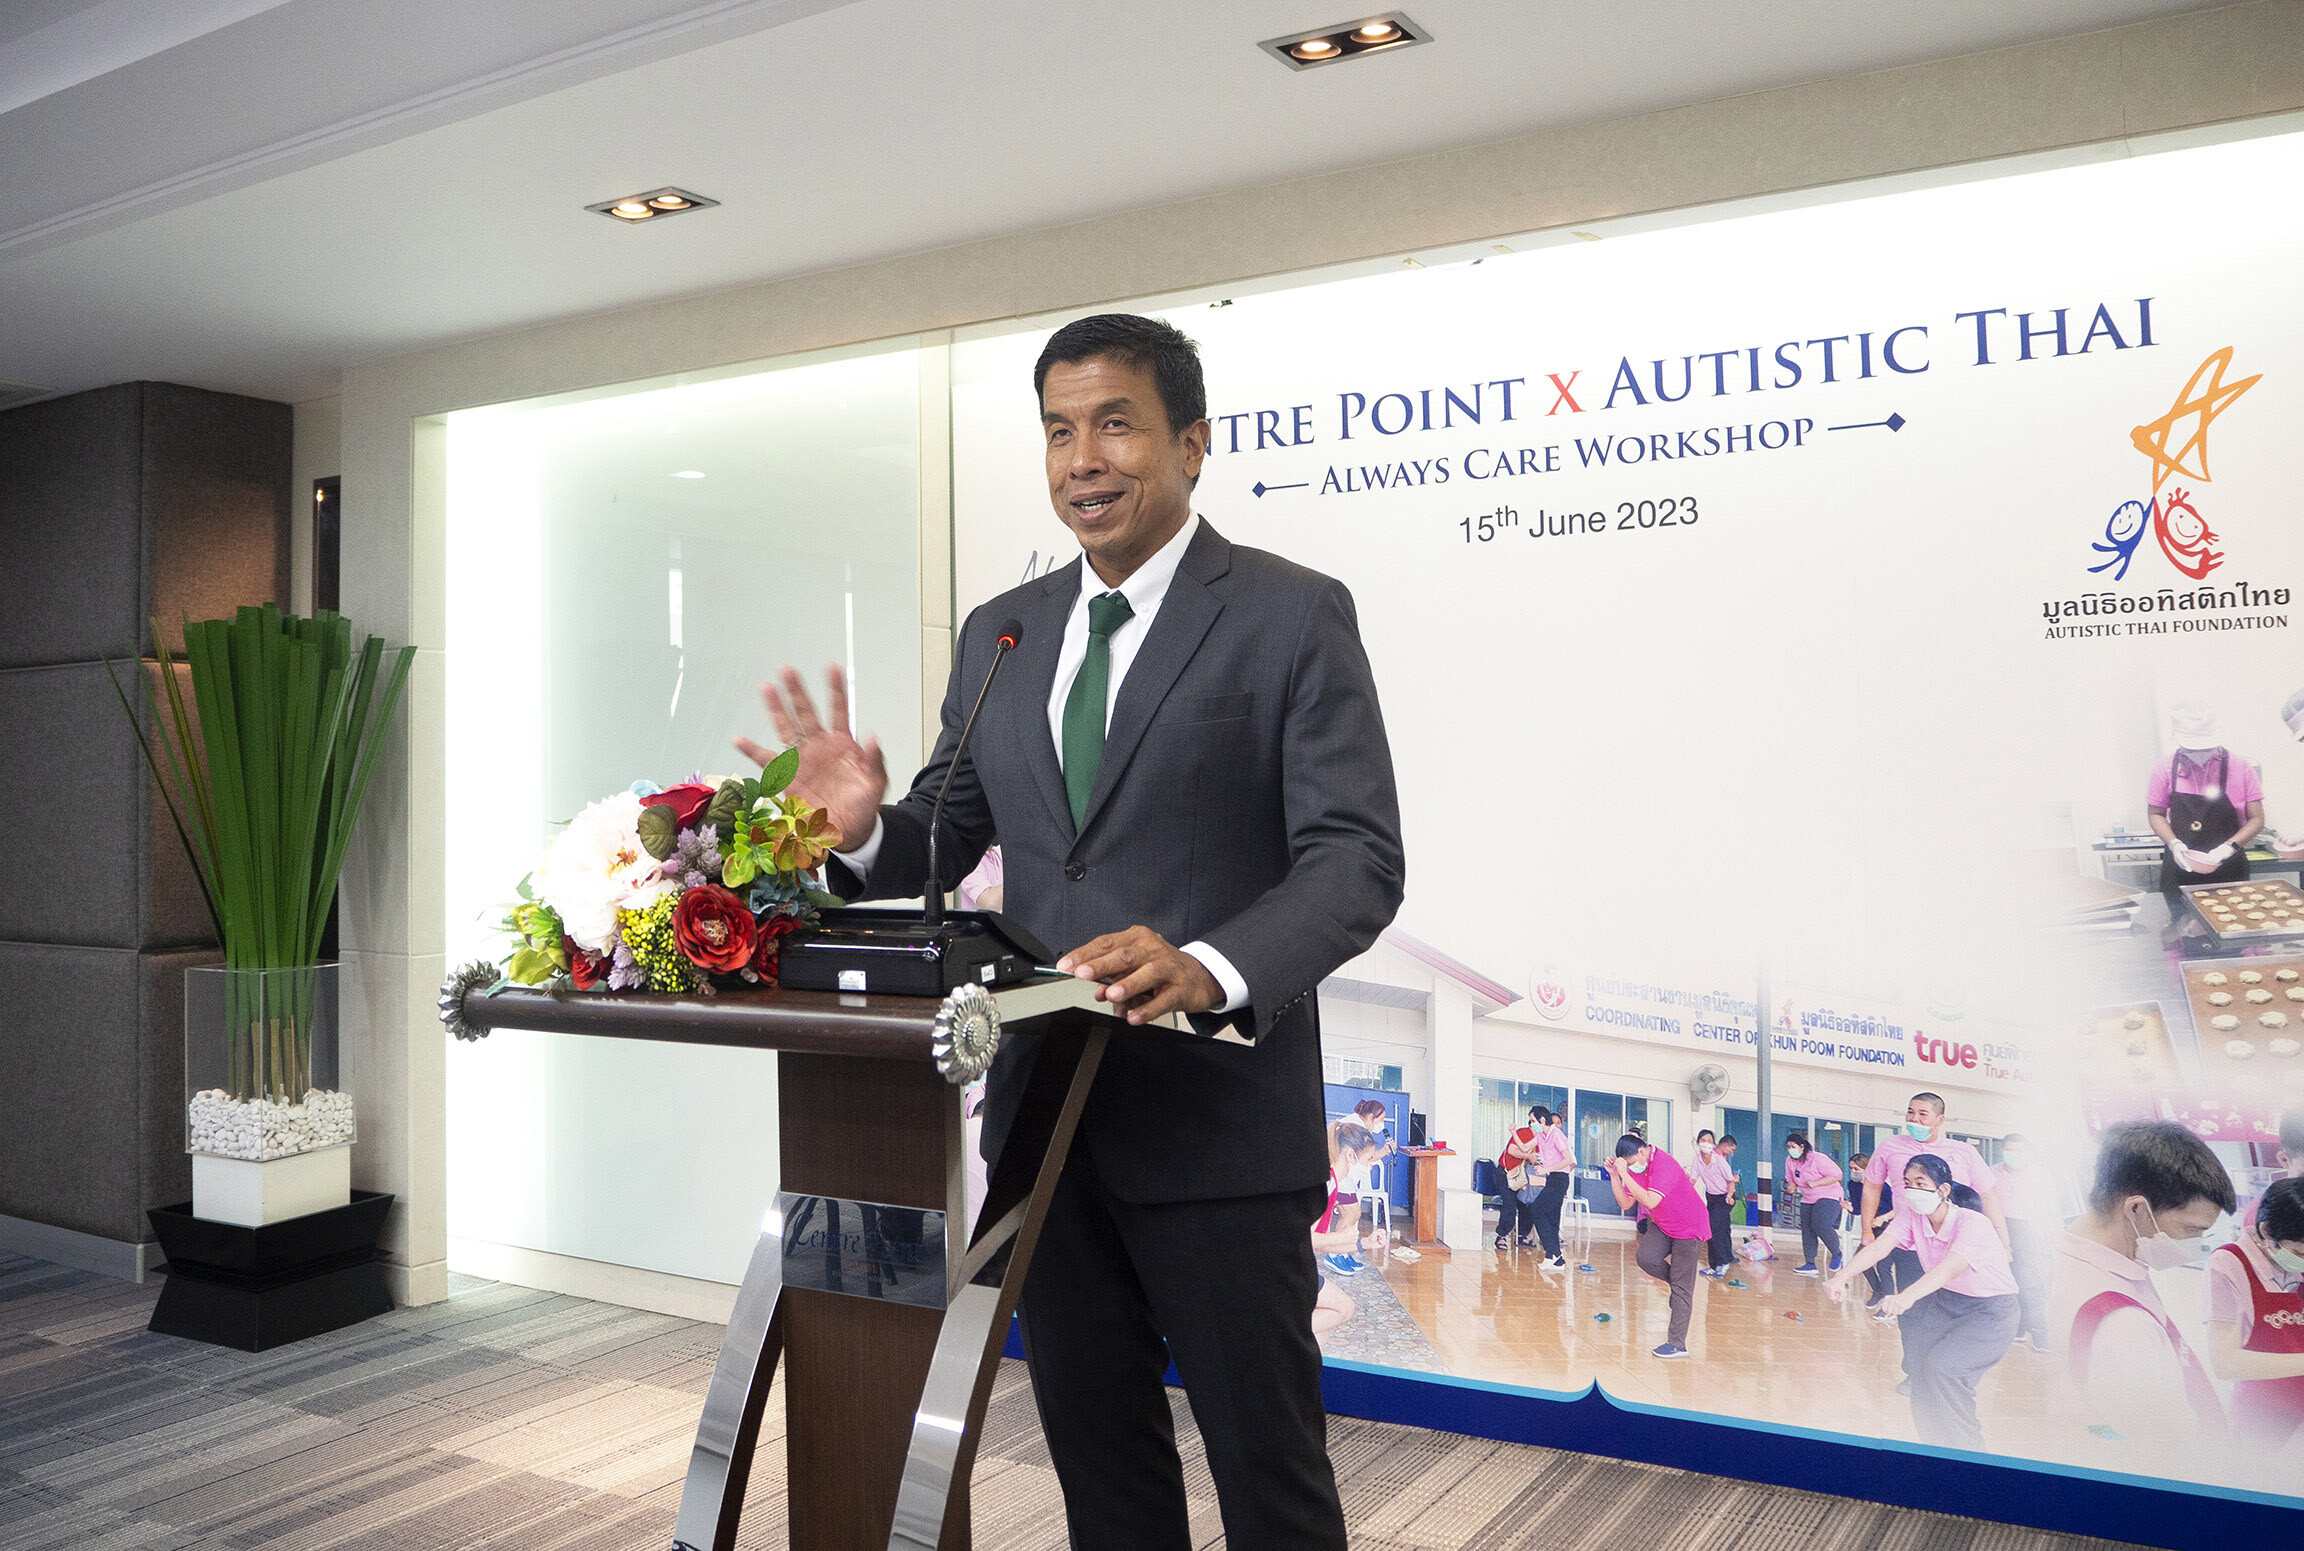 กลุ่มโรงแรมเซนเตอร์ พอยต์ และ มูลนิธิออทิสติกไทย จัดกิจกรรมการกุศลภายใต้ชื่อโครงการ "Centre Point x Autistic Thai Always Care Workshop"